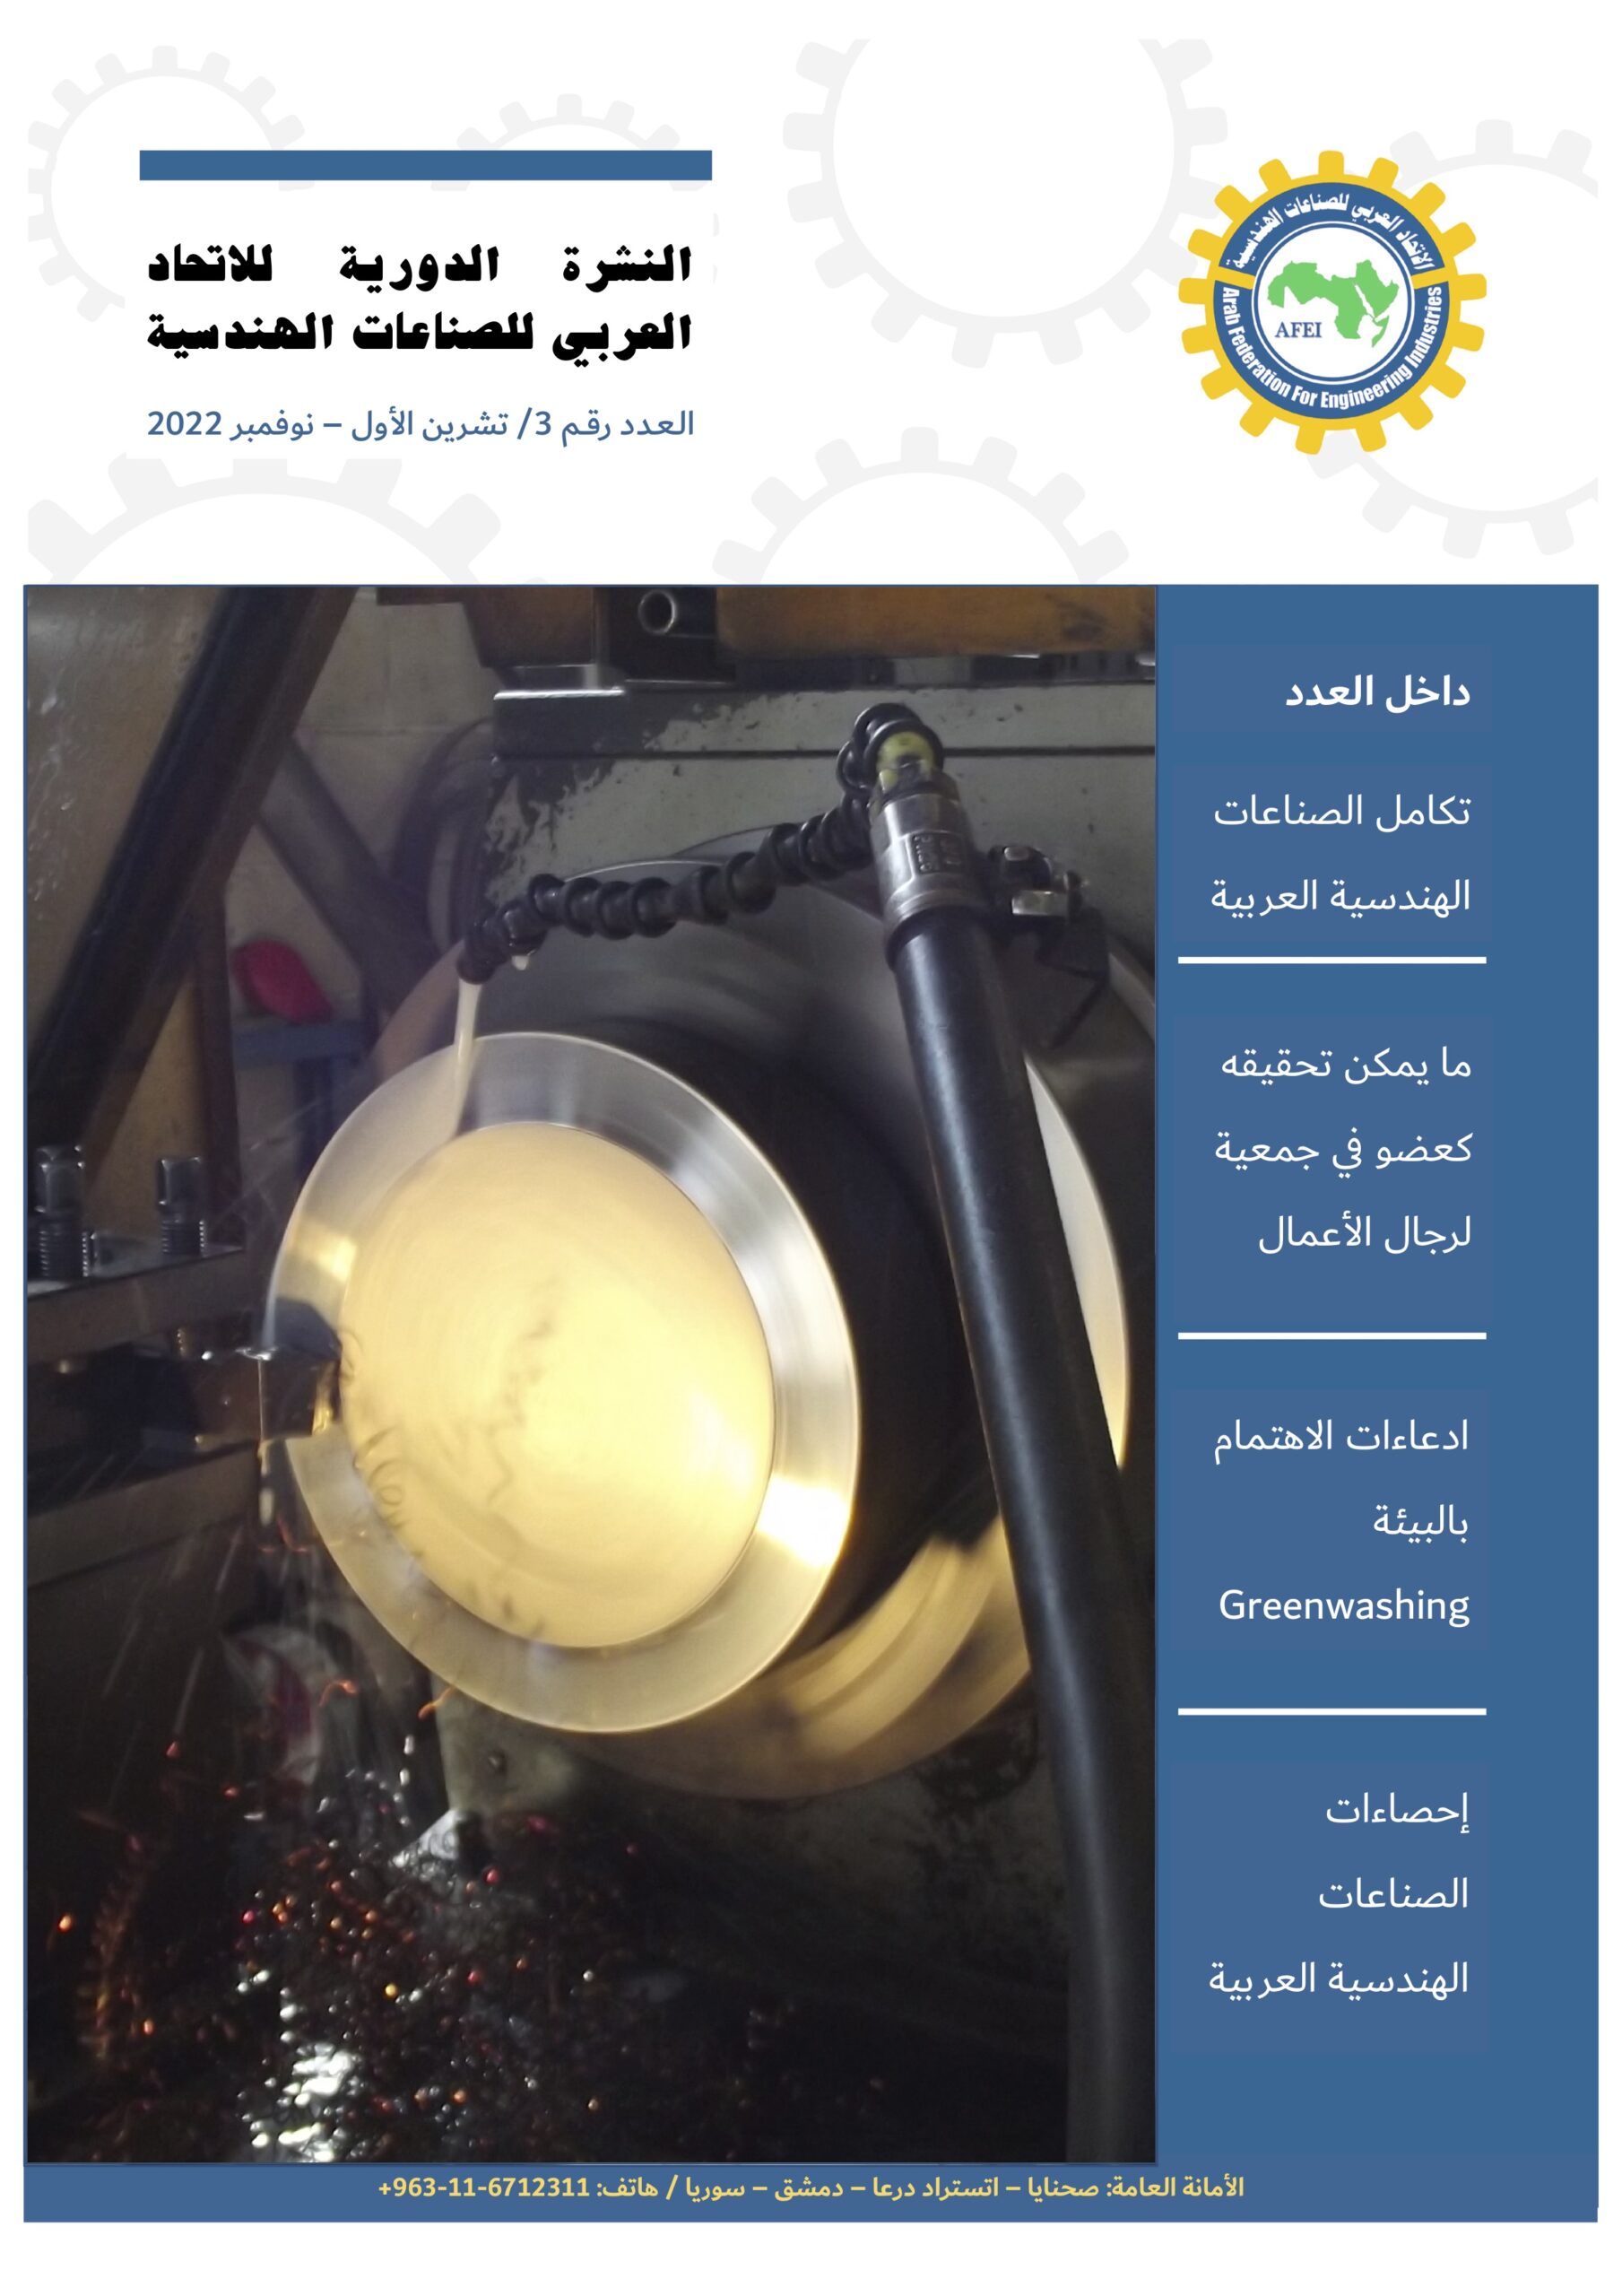 AFEI Newsletter 3 Nov 2022 cover